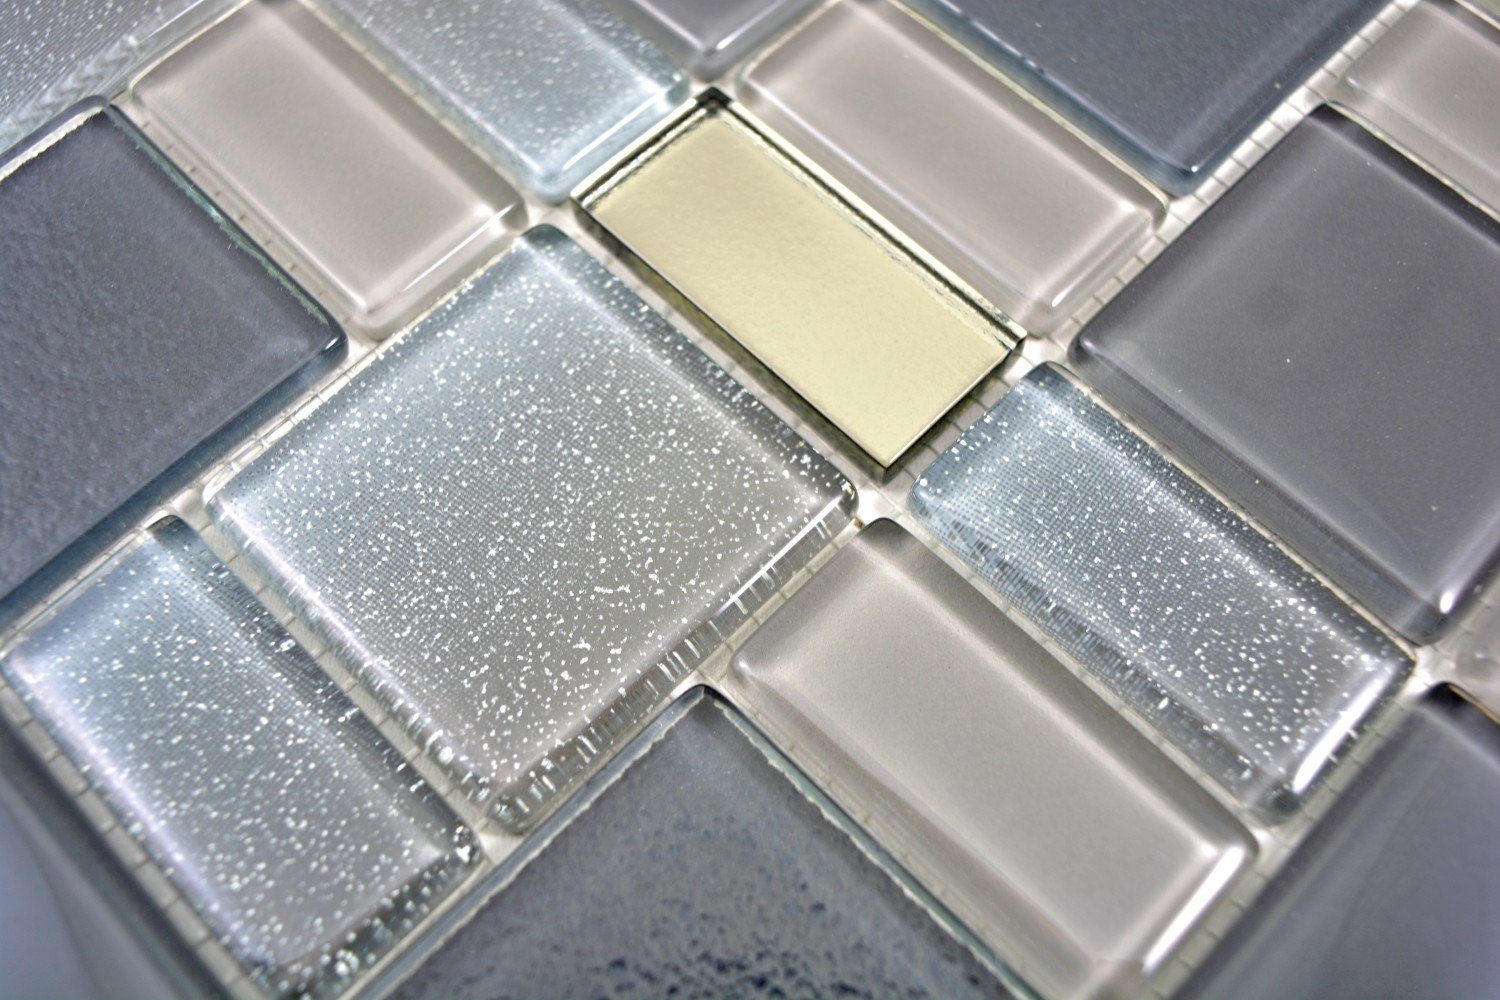 Mosaikfliesen Glasmosaik grau Fliesenspiegel Mosani cream Mosaikfliesen